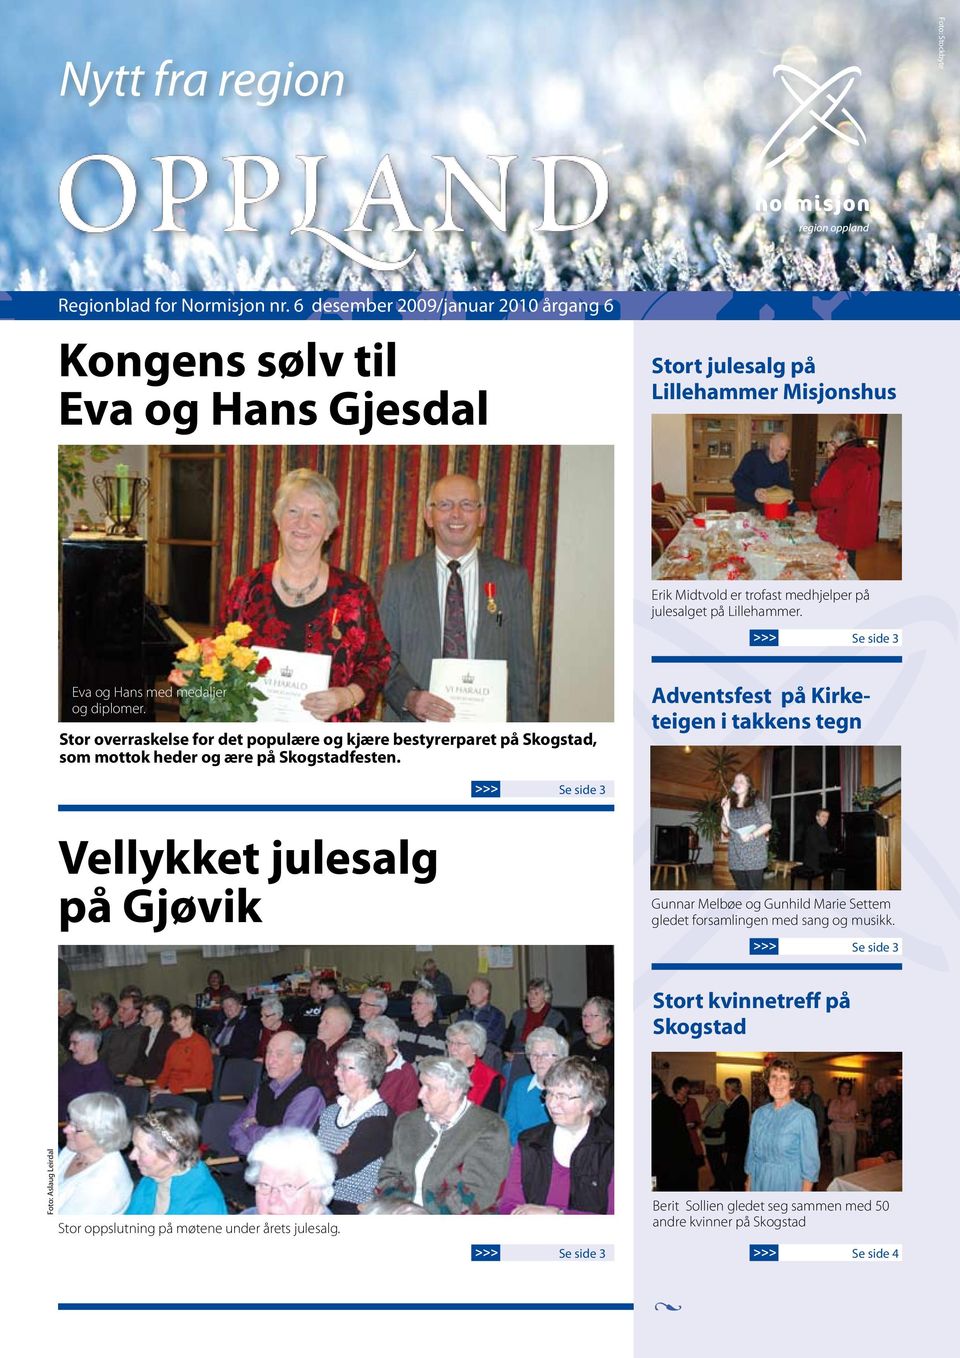 >>> Se side 3 Eva og Hans med medaljer og diplomer. Stor overraskelse for det populære og kjære bestyrerparet på Skogstad, som mottok heder og ære på Skogstadfesten.